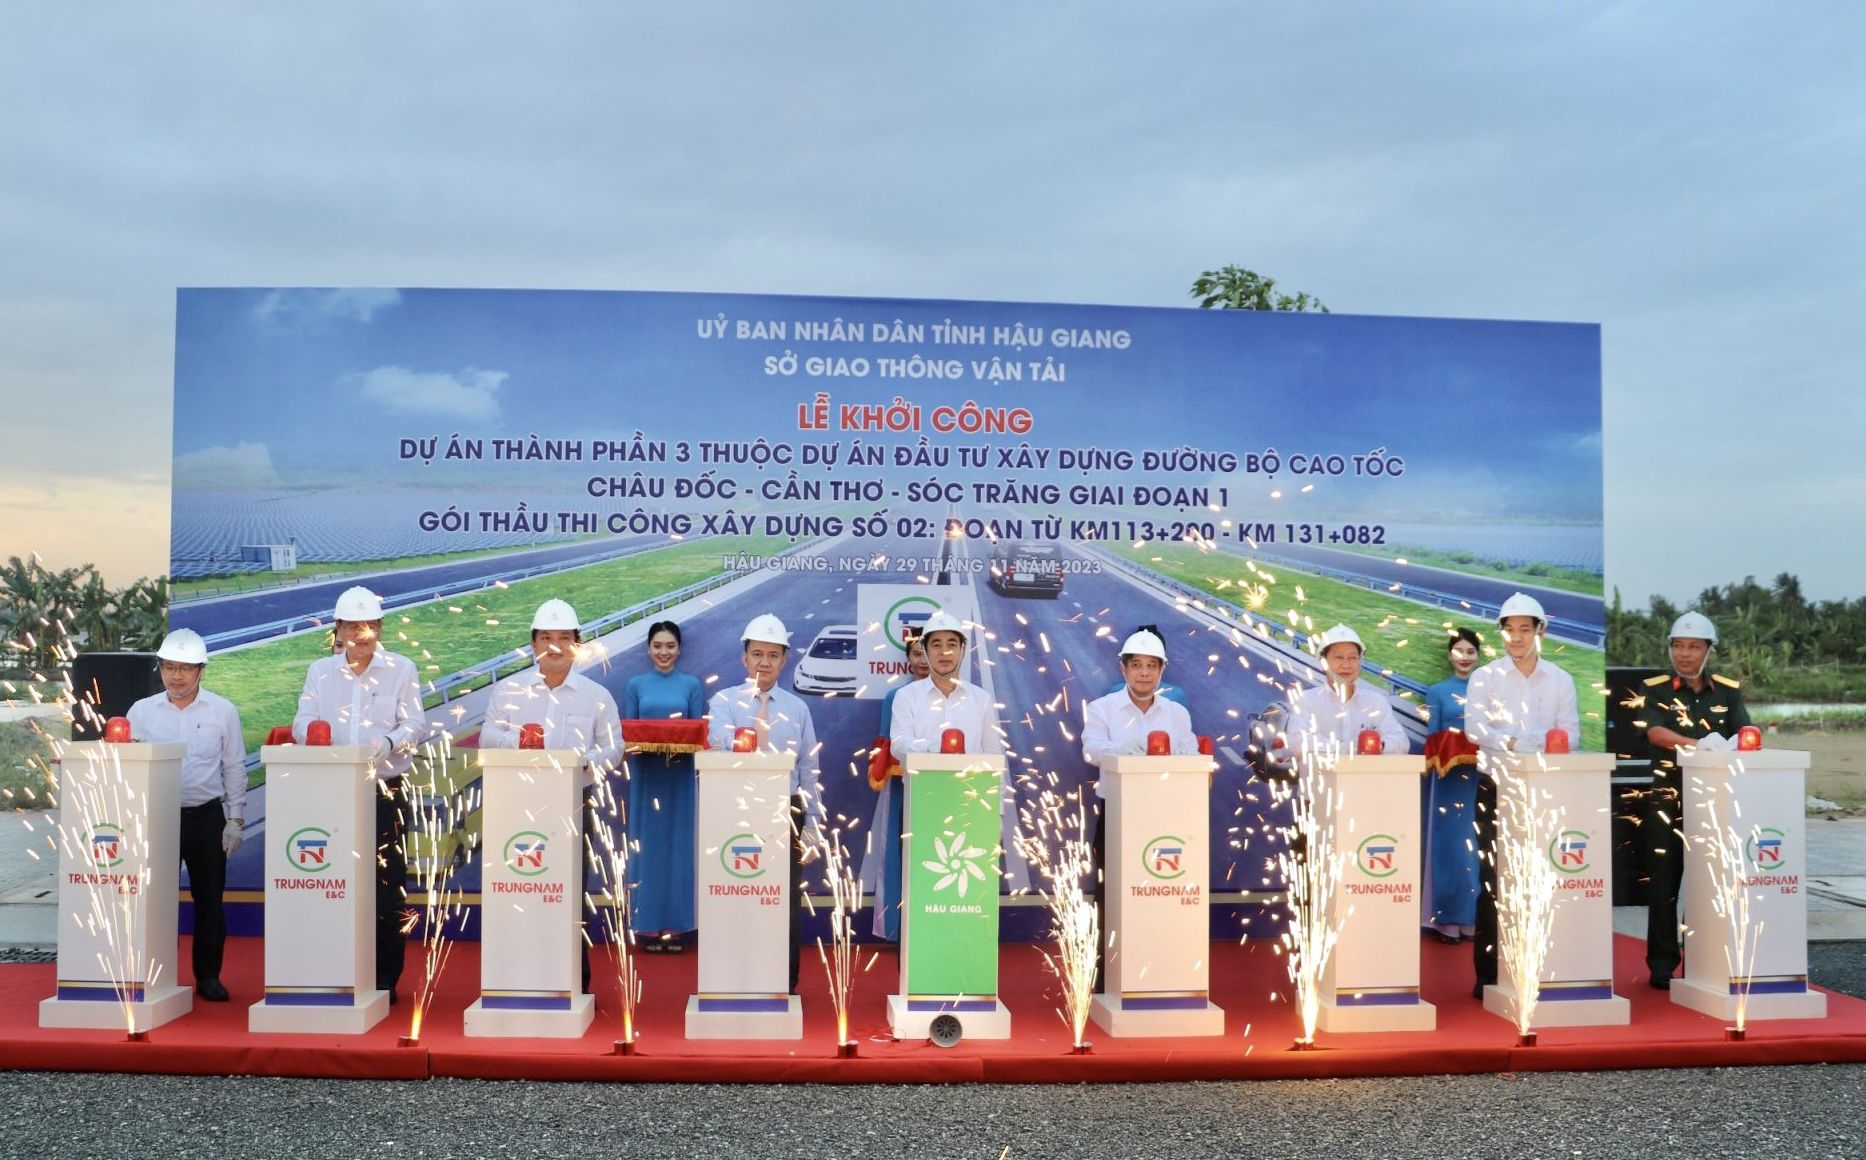 Thêm một gói thầu cao tốc Châu Đốc - Cần Thơ - Sóc Trăng khởi công xây dựng